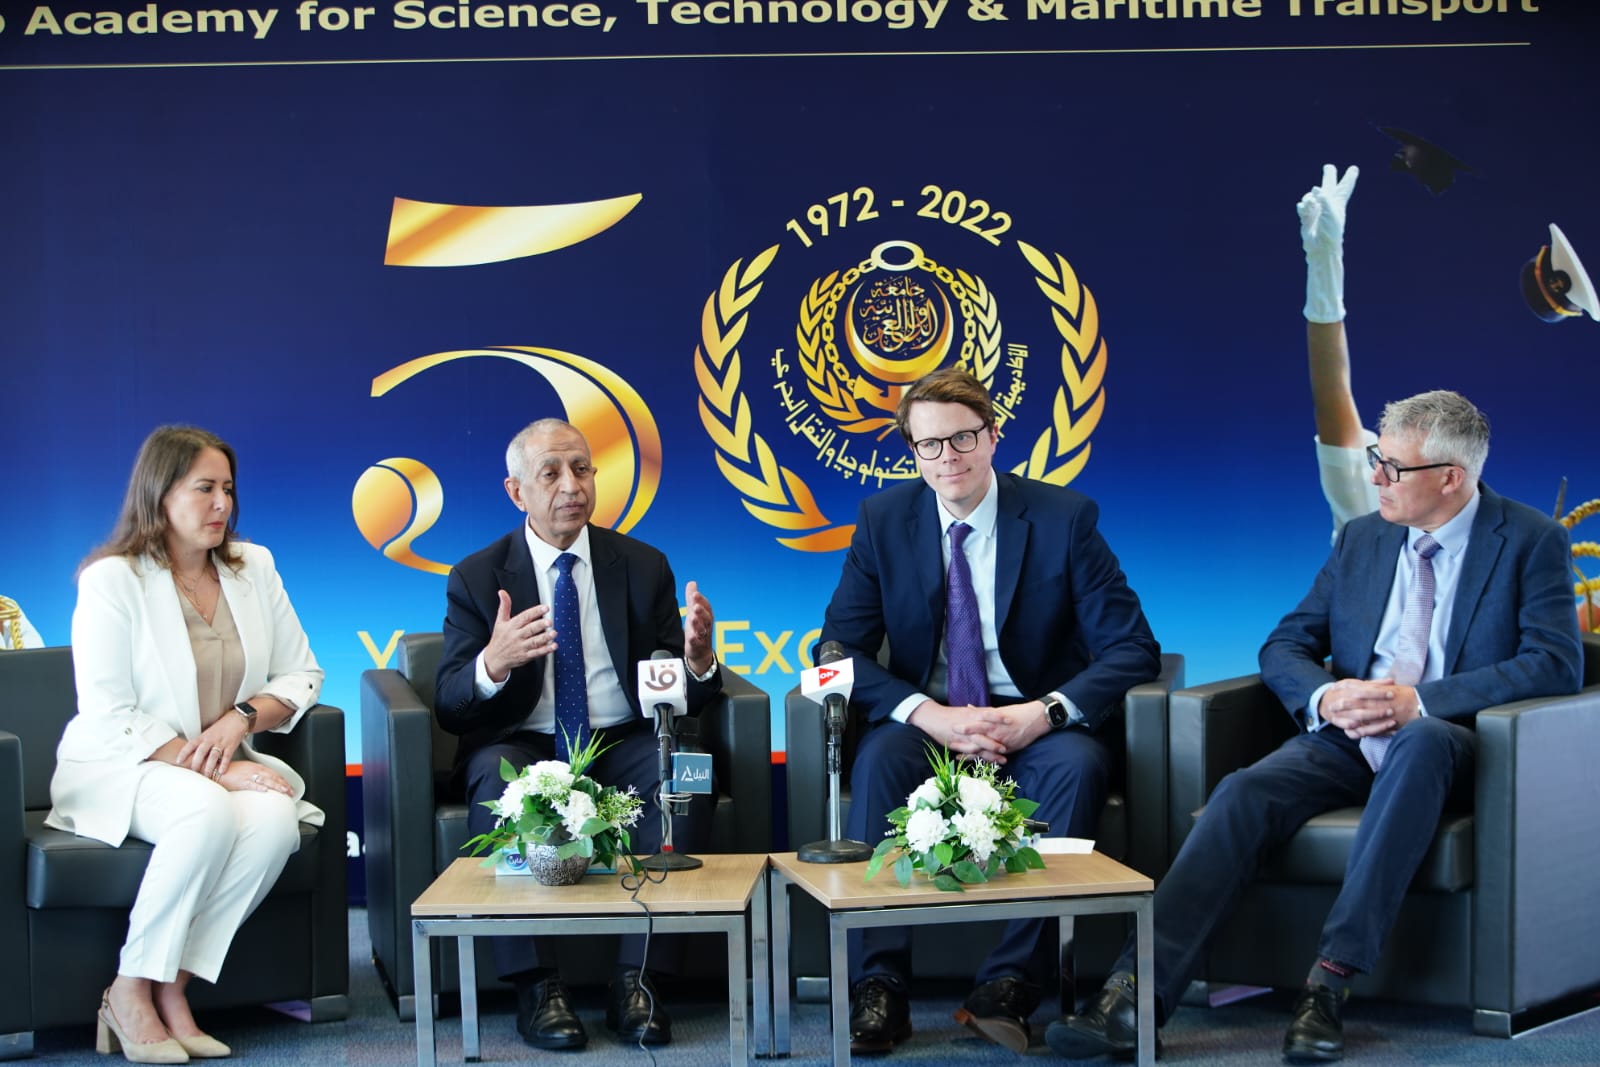 الأكاديمية العربية للعلوم والتكنولوجيا والنقل البحري تتعاون مع اكبر تحالف للجامعات في انجلترا 